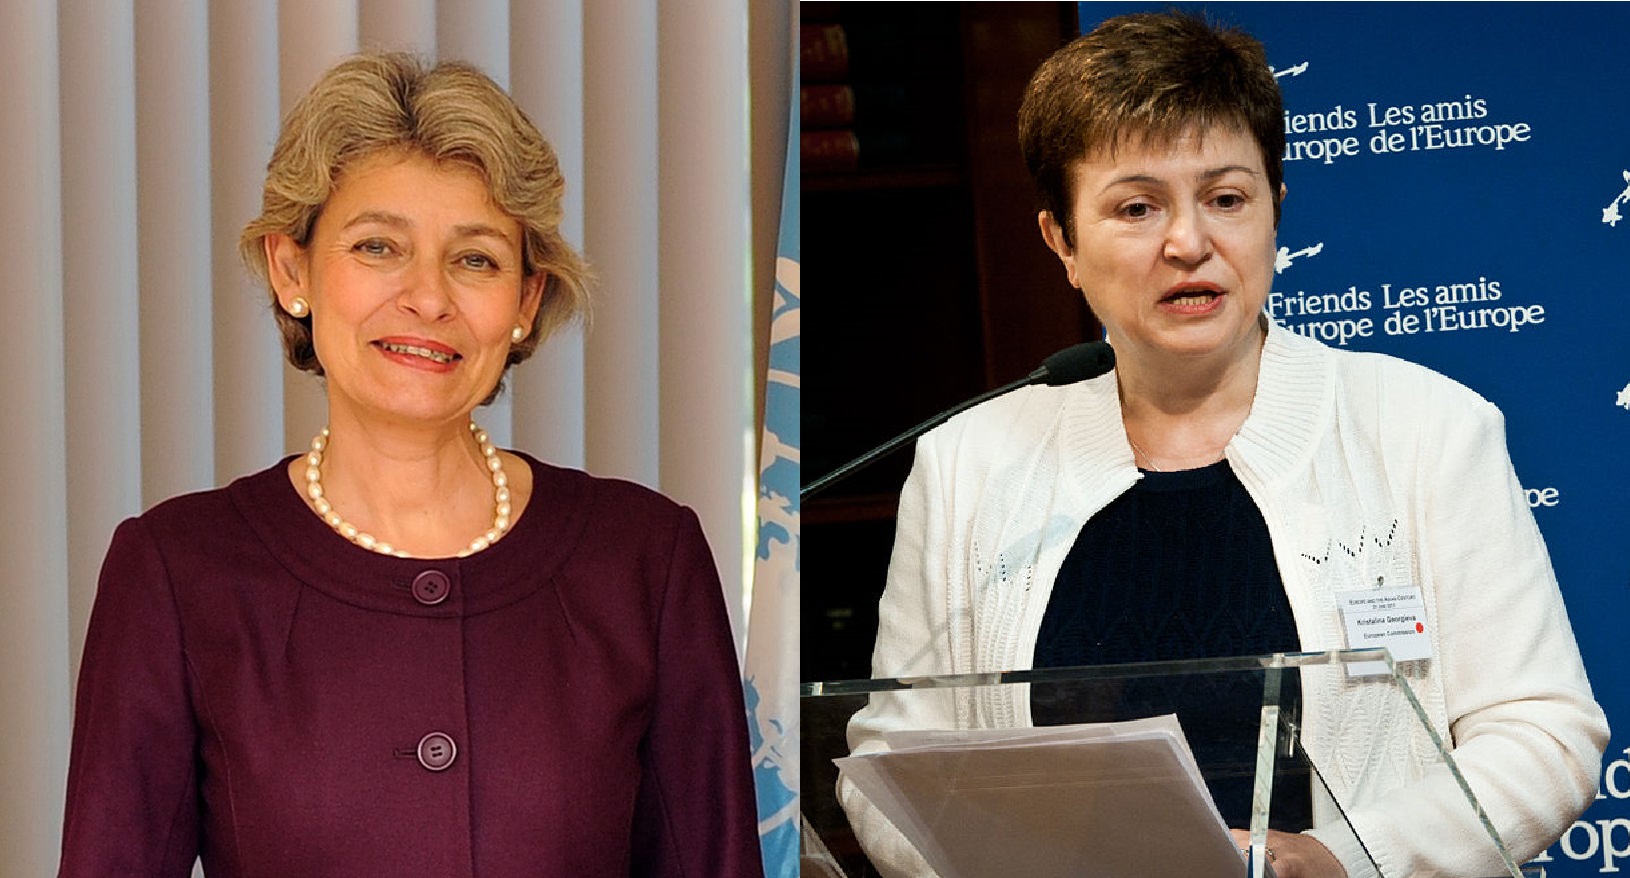 Bulgária két embert is jelölt az ENSZ főtitkári posztjára